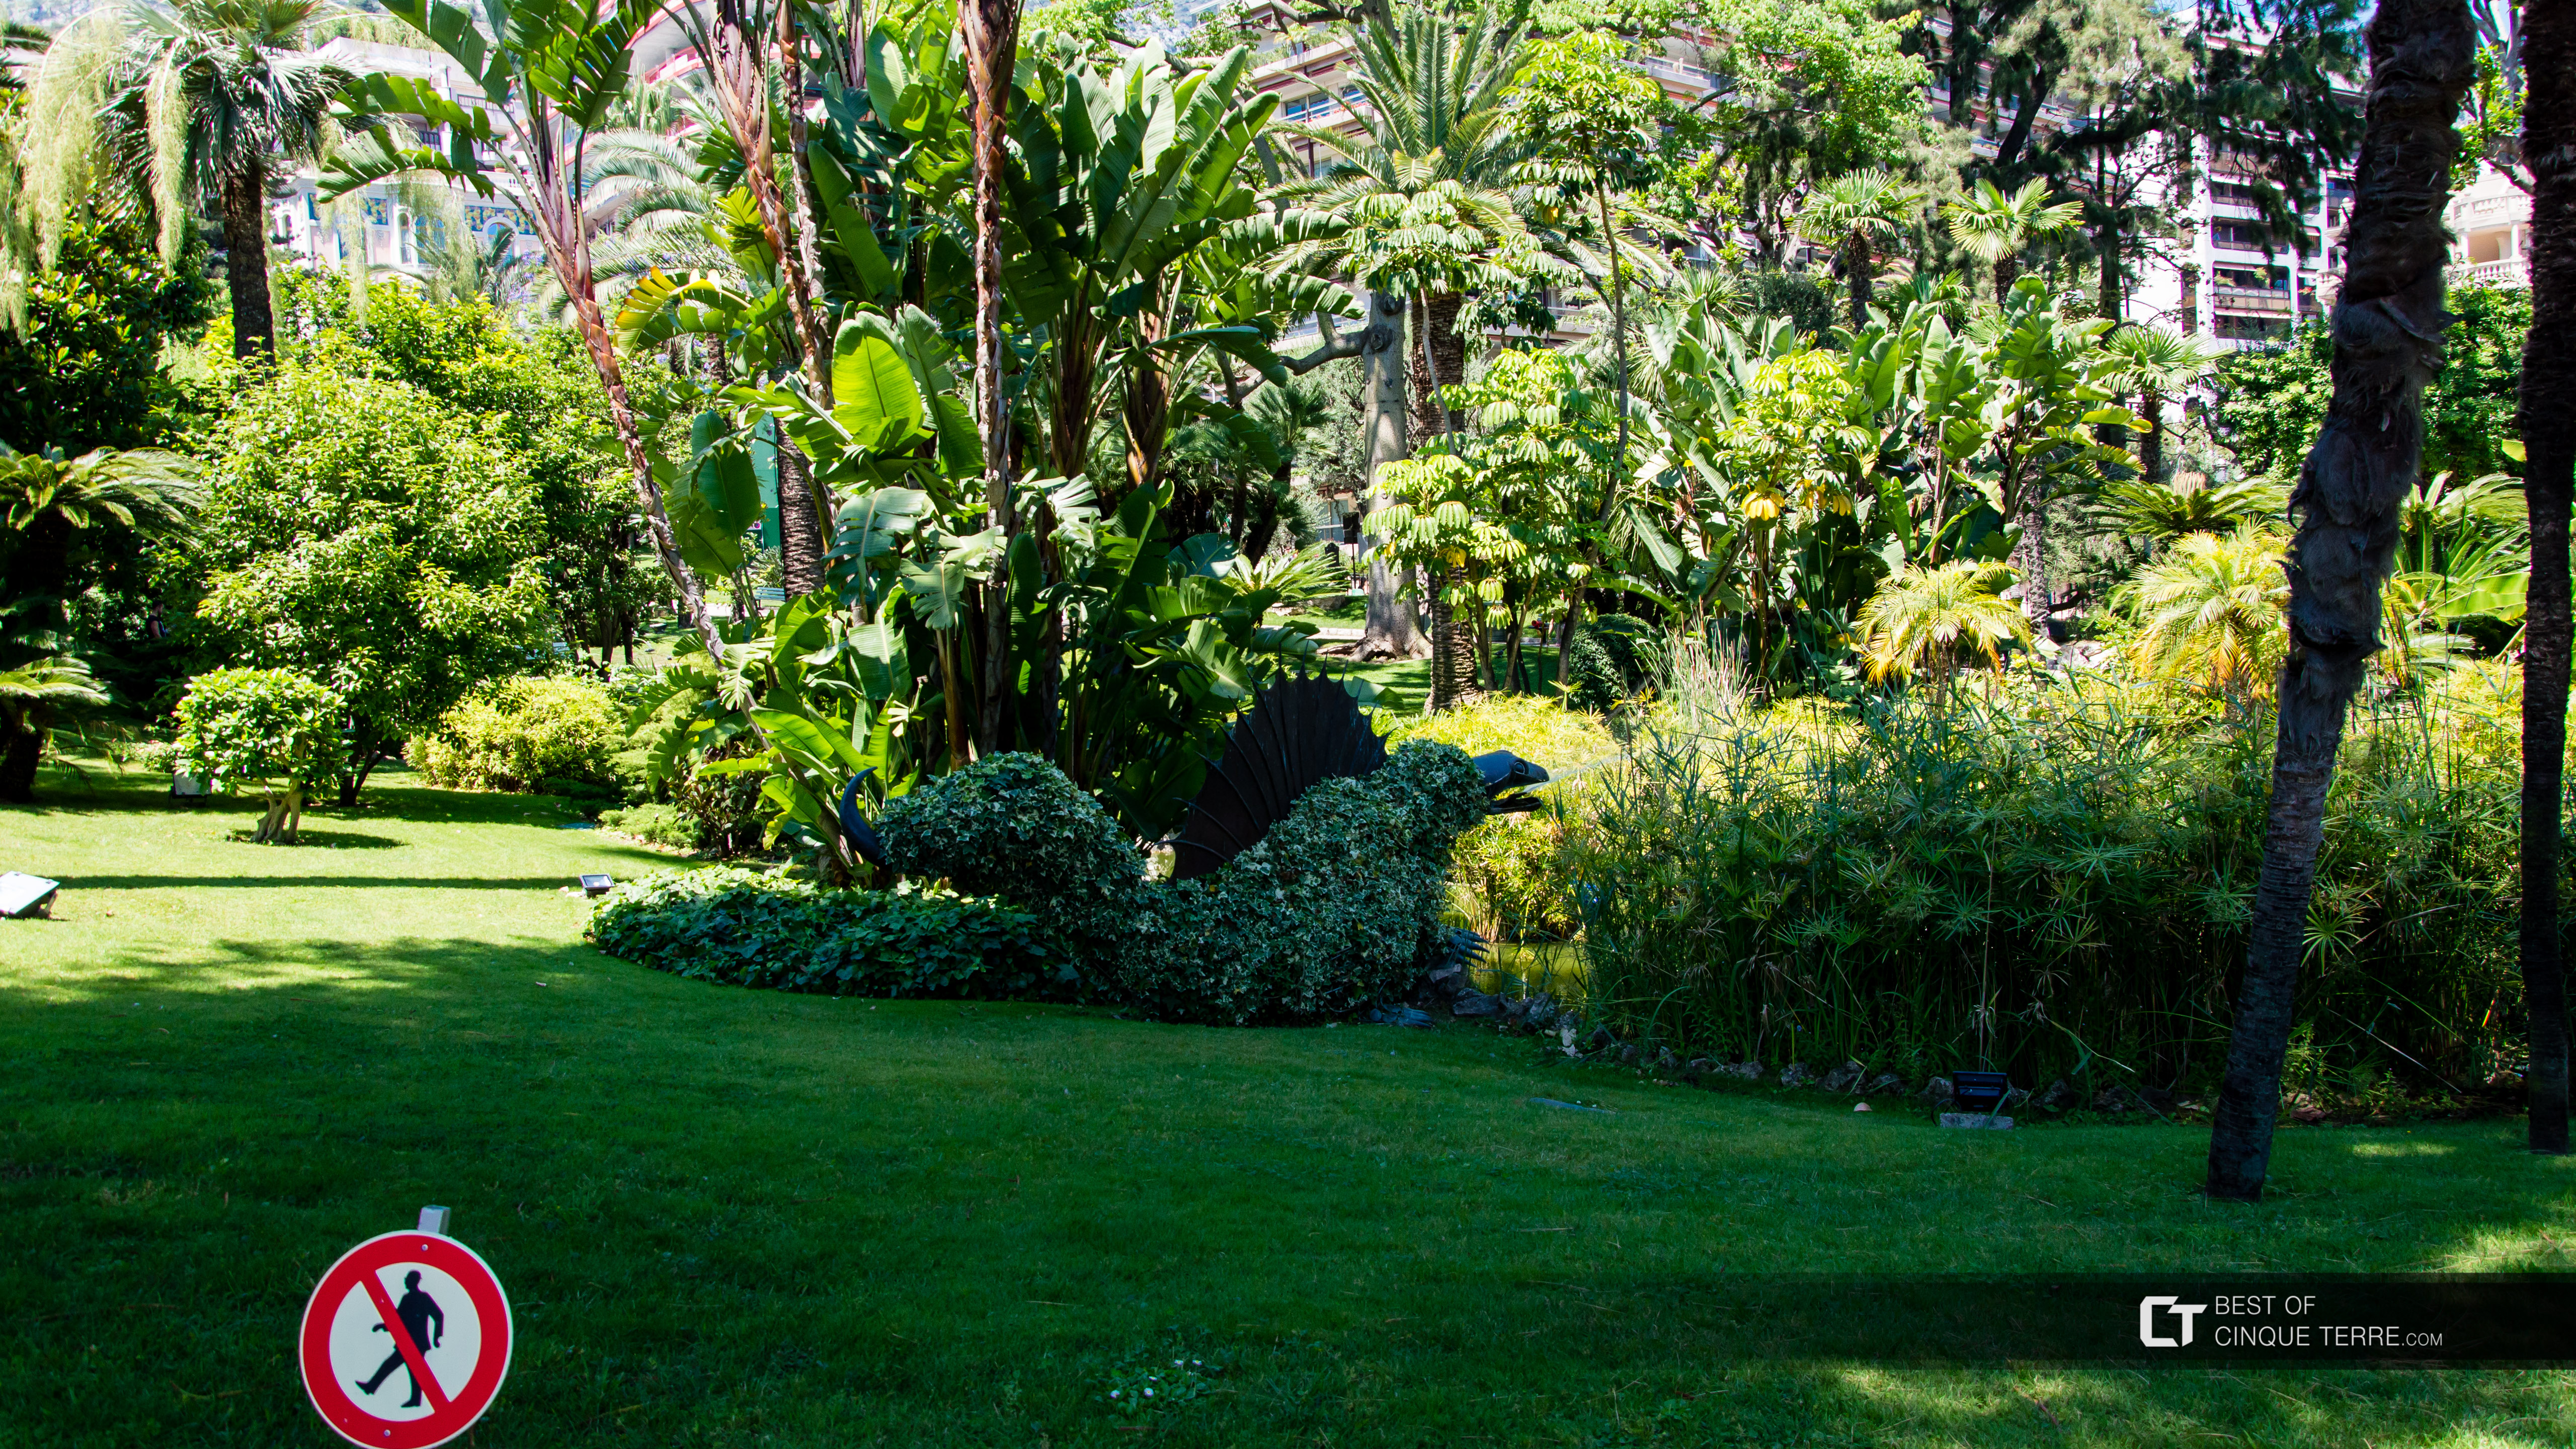 Gartenanlagen in der Nähe der Spielbank von Monte Carlo, Monaco